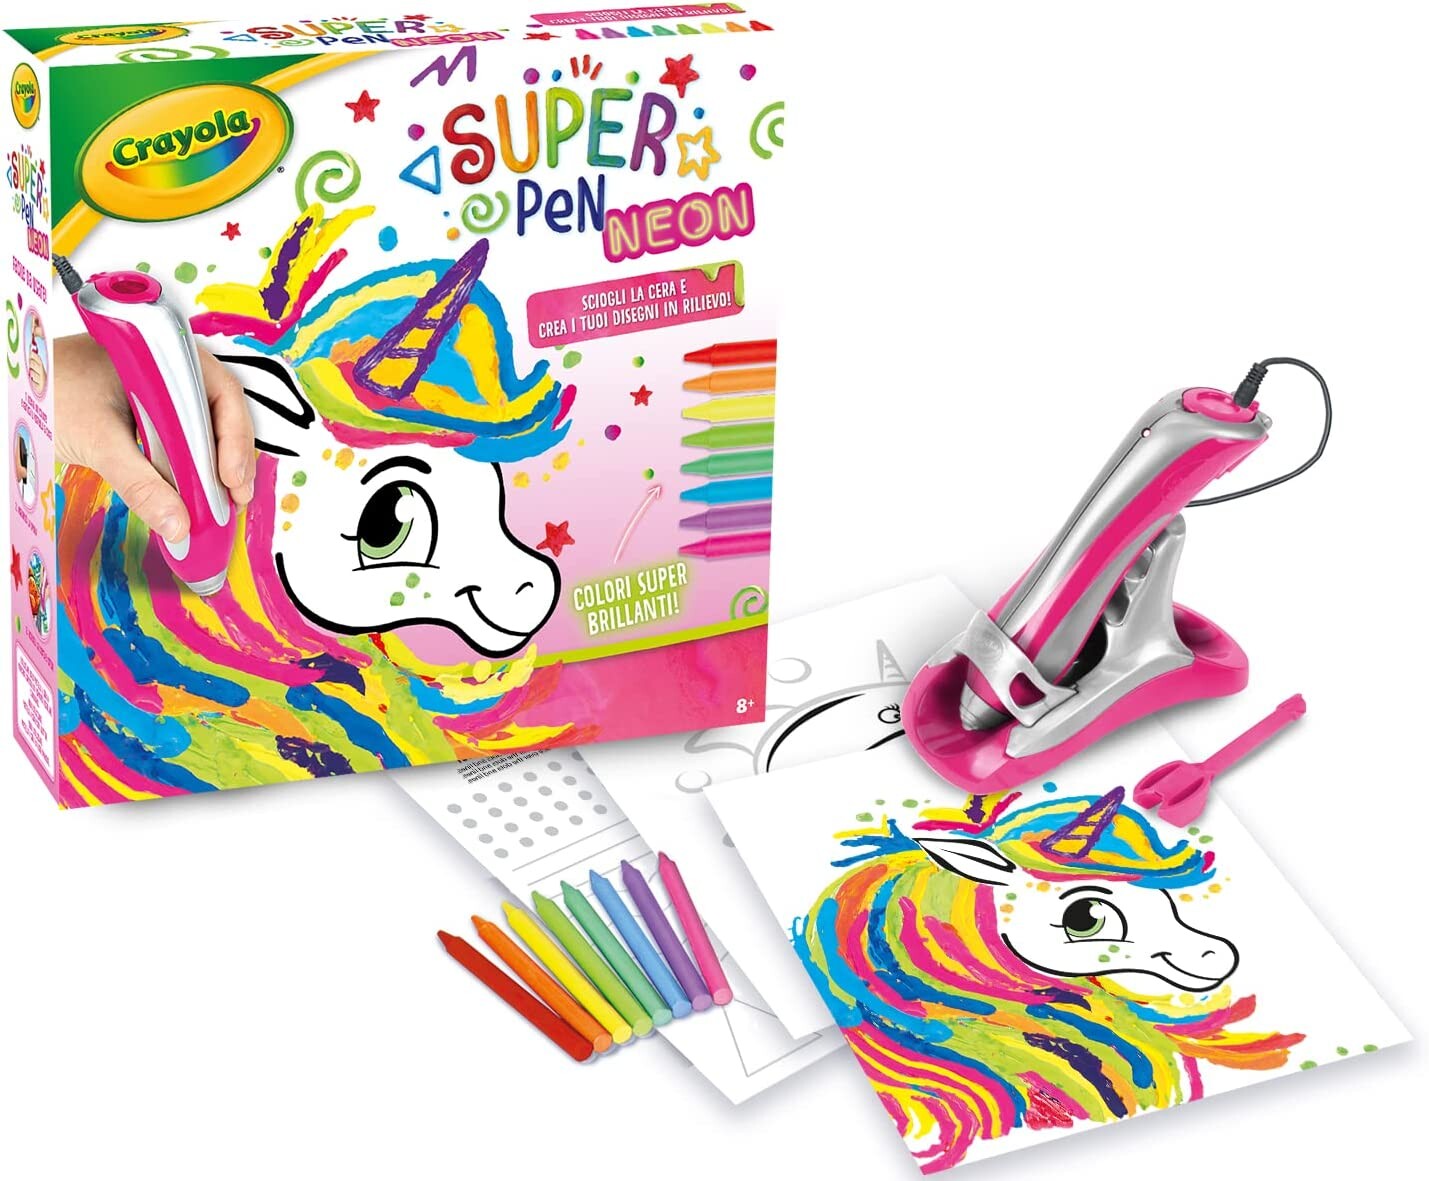 Crayola - super pen unicorno neon, gioco per sciogliere i pastelli a cera e creare disegni in rilievo, attività creativa e regalo per bambini, età 8+ - CRAYOLA